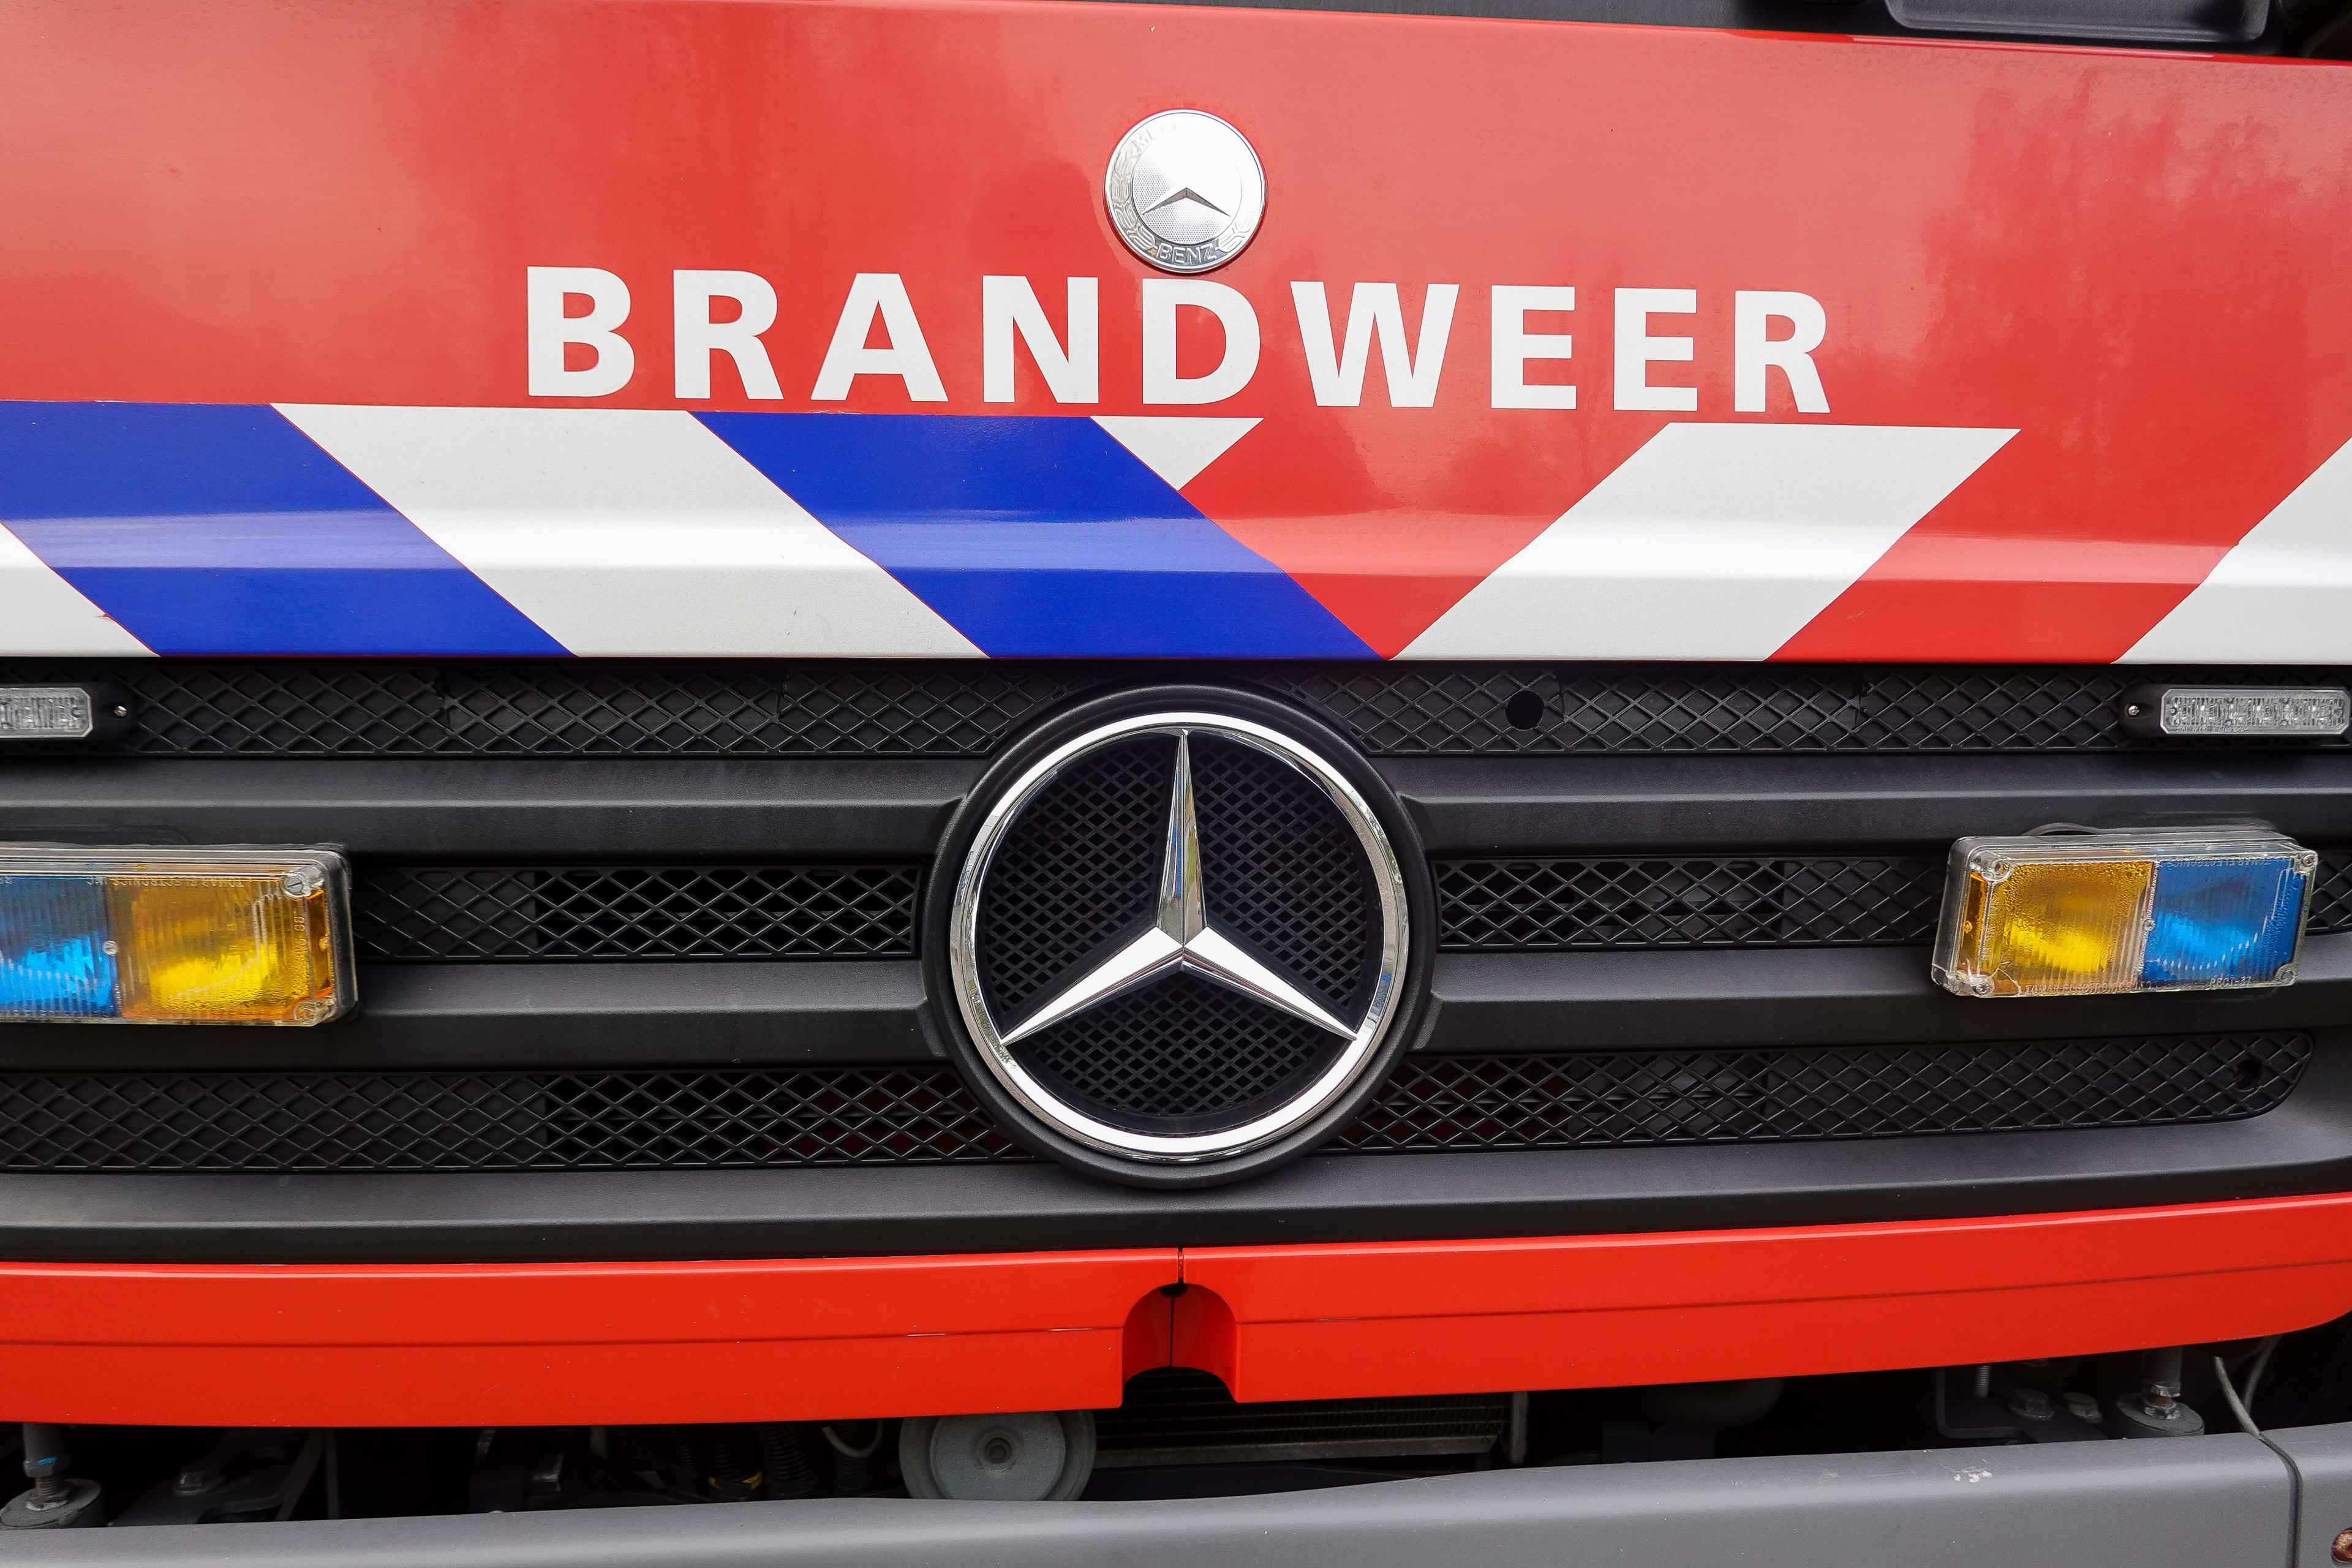 Bewoner via balkon uit woning Den Haag geëvacueerd vanwege brand